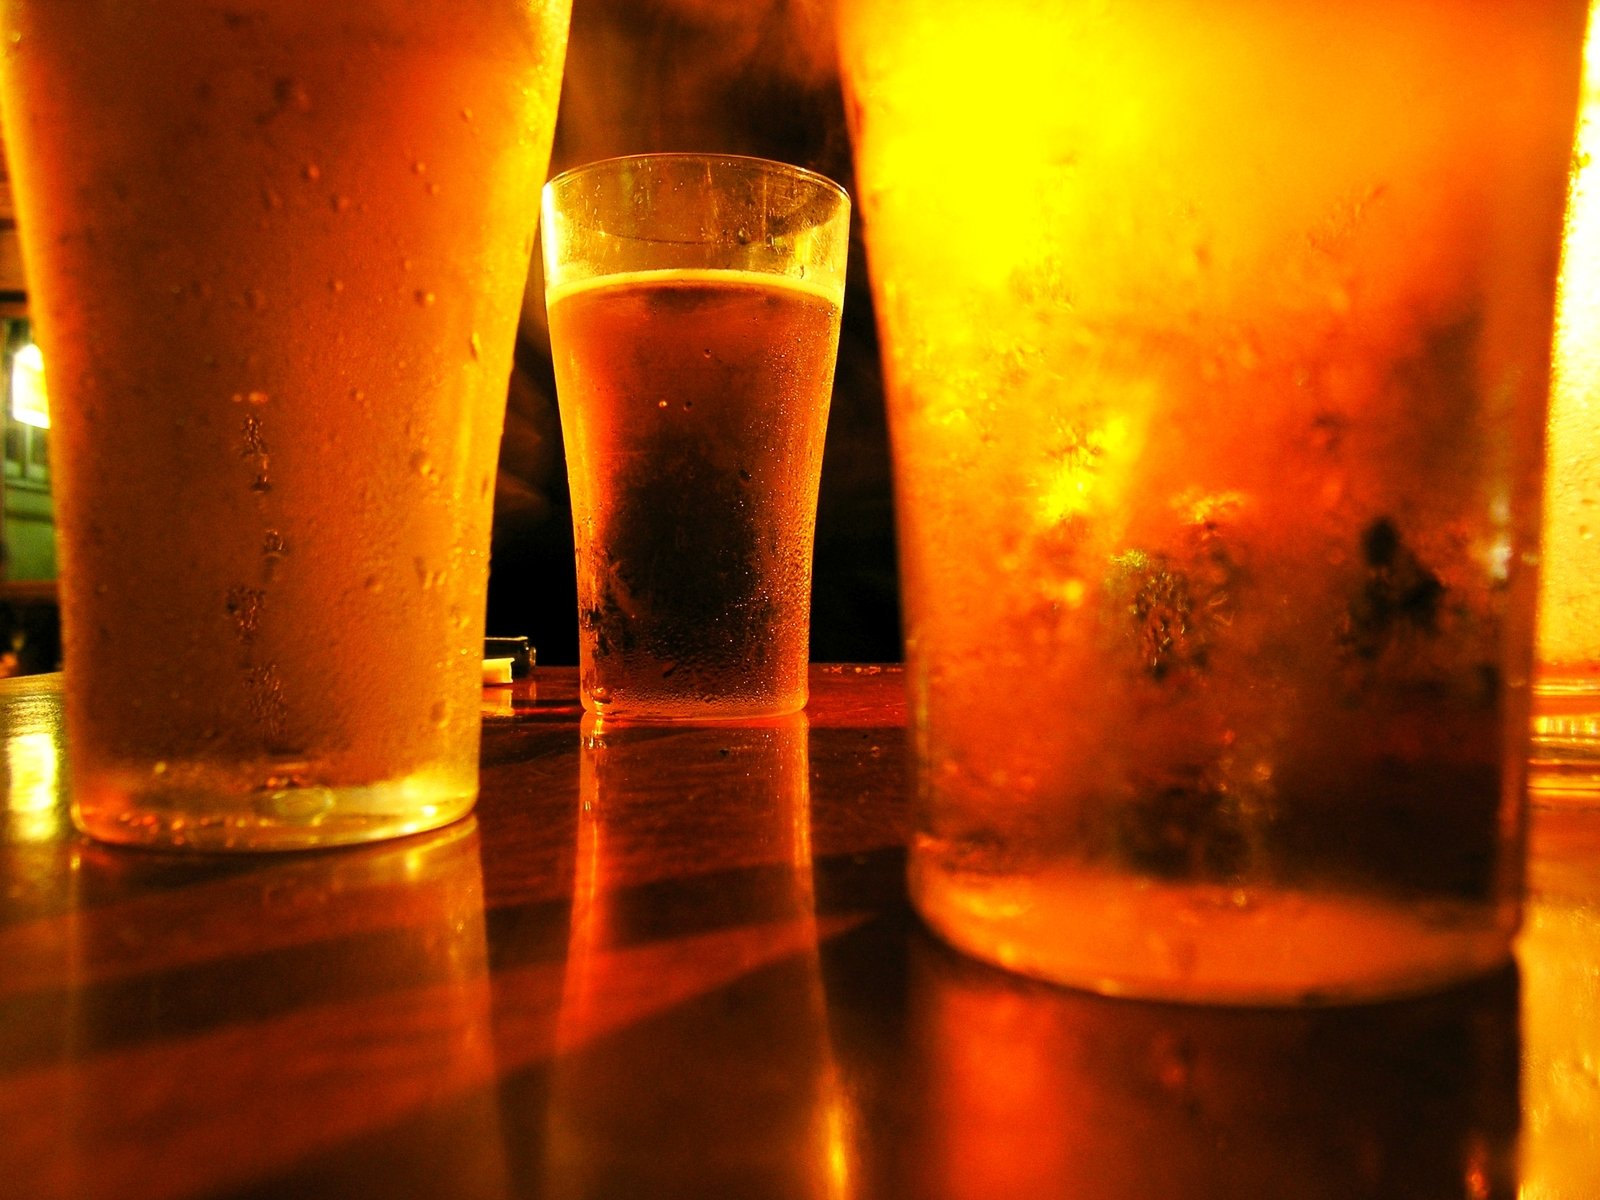 Three beers